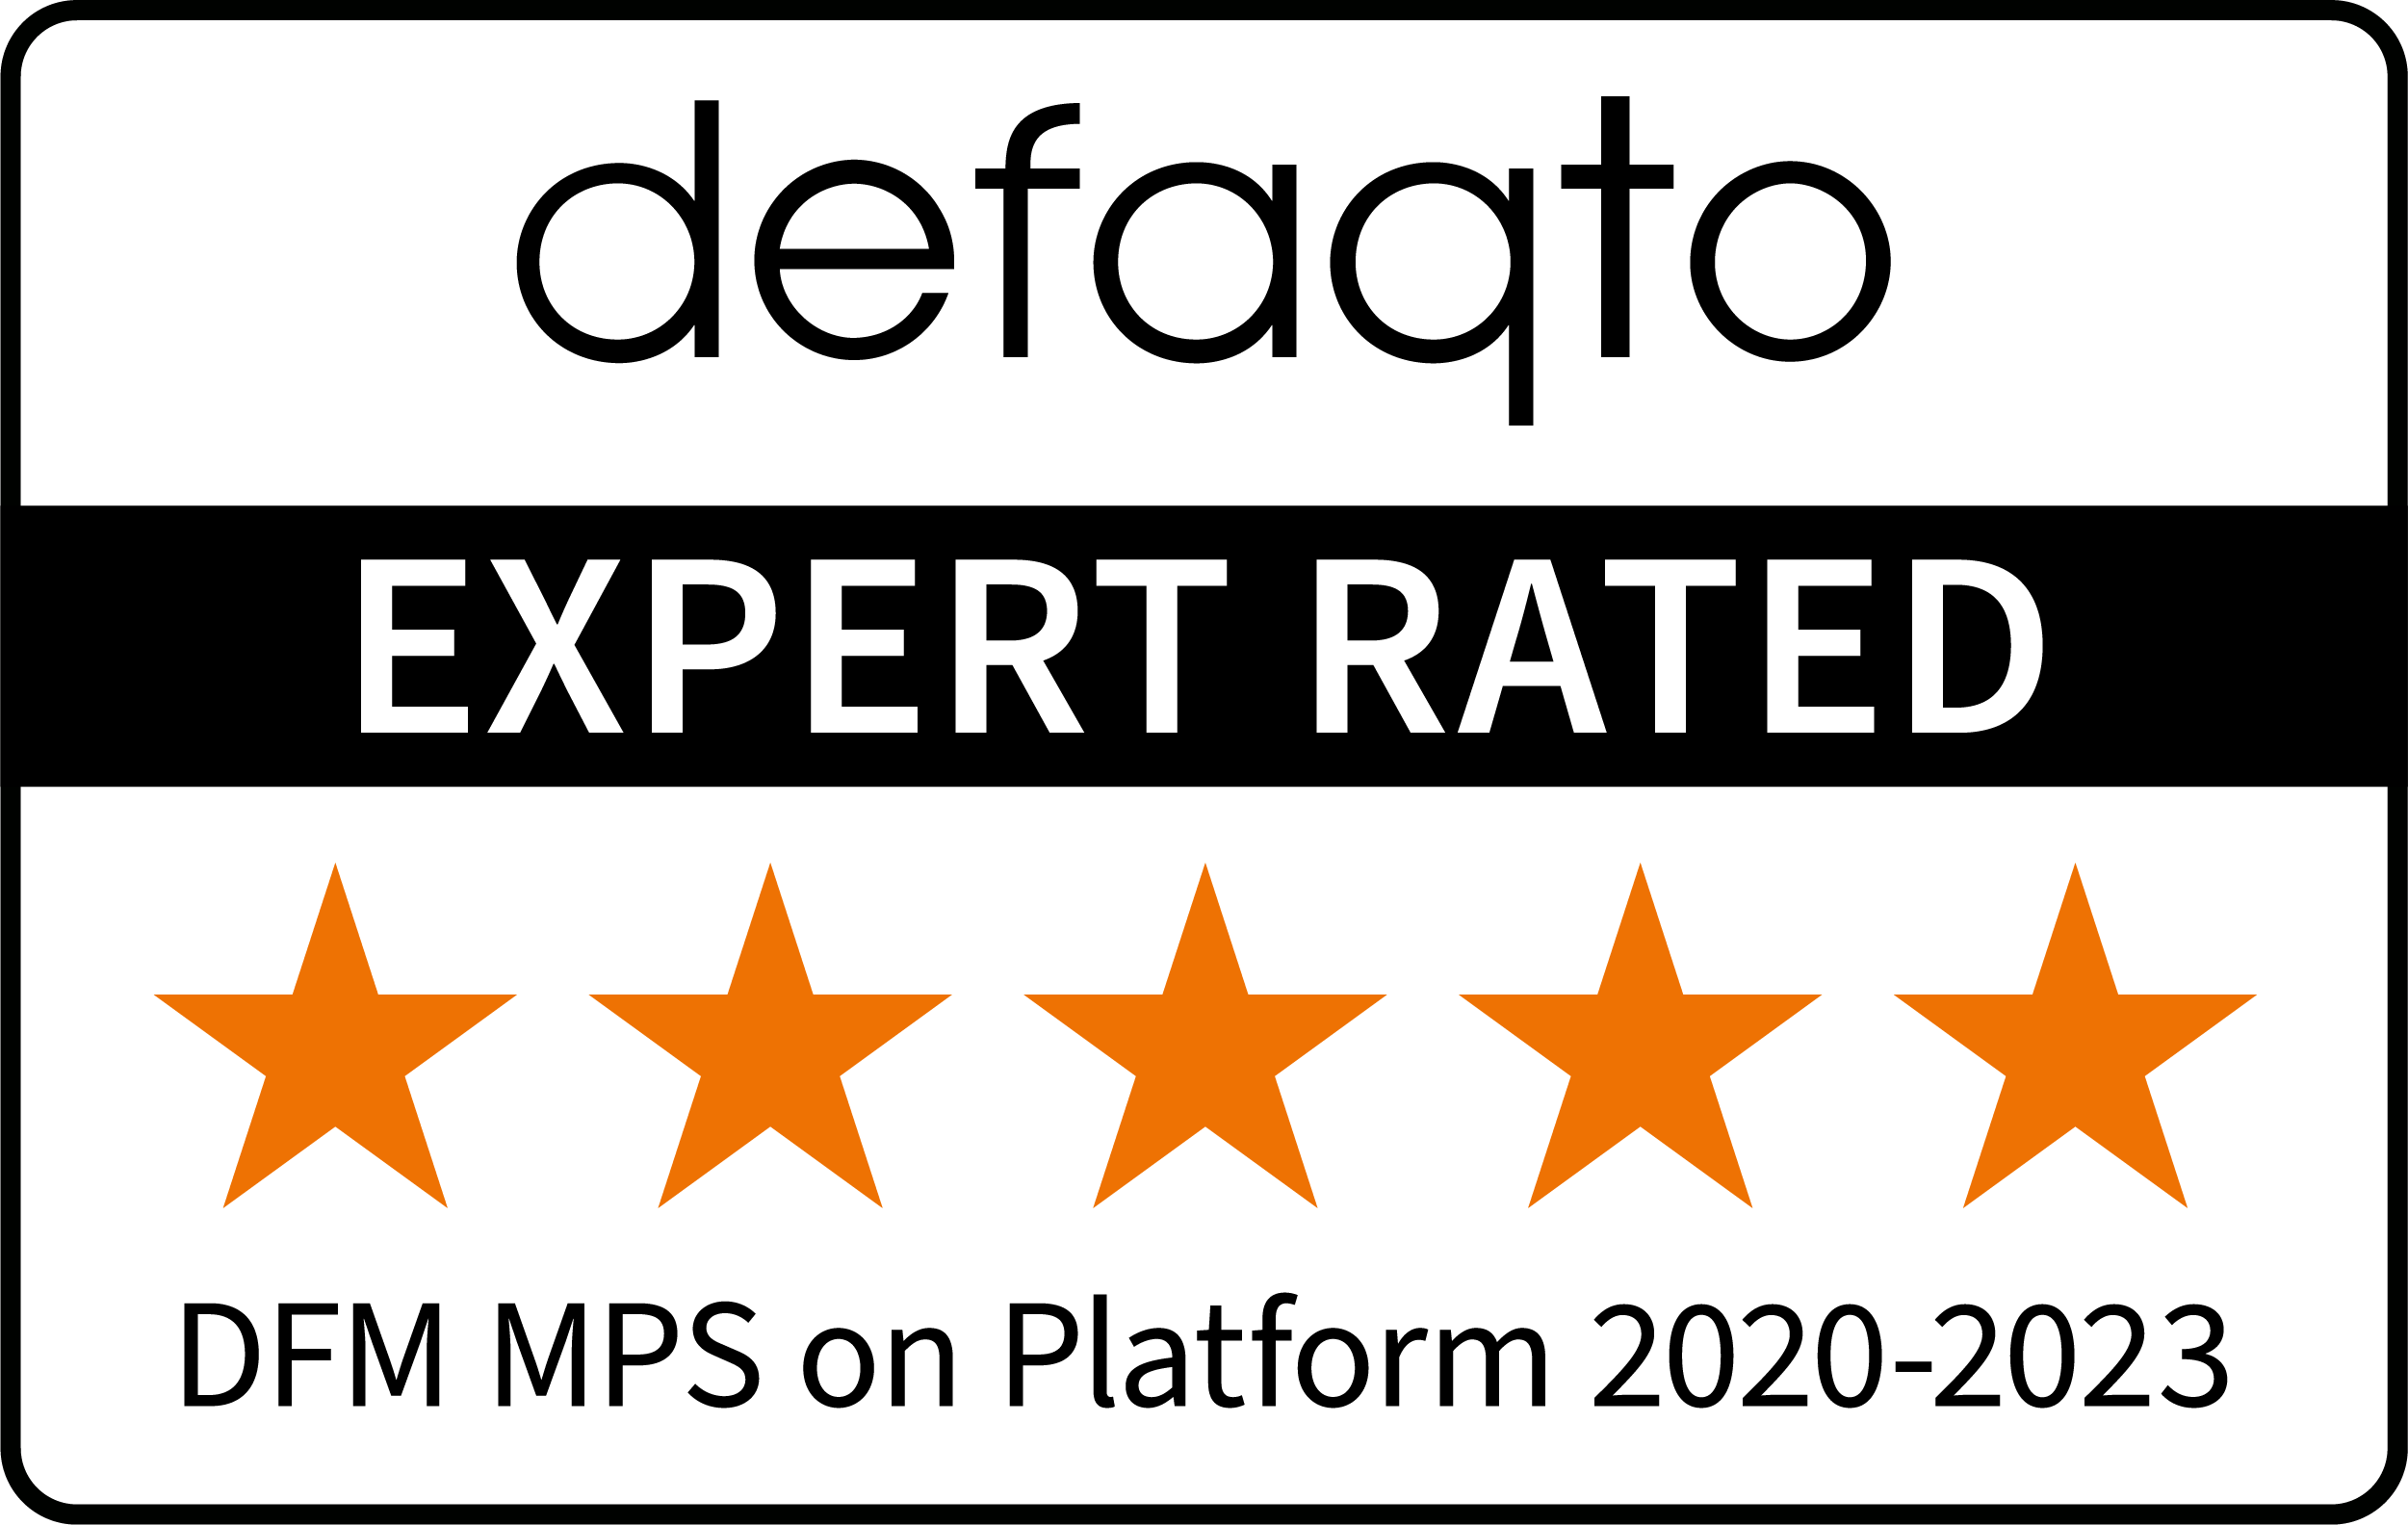 5 star rating award for DFM MPS on Platform from defaqto